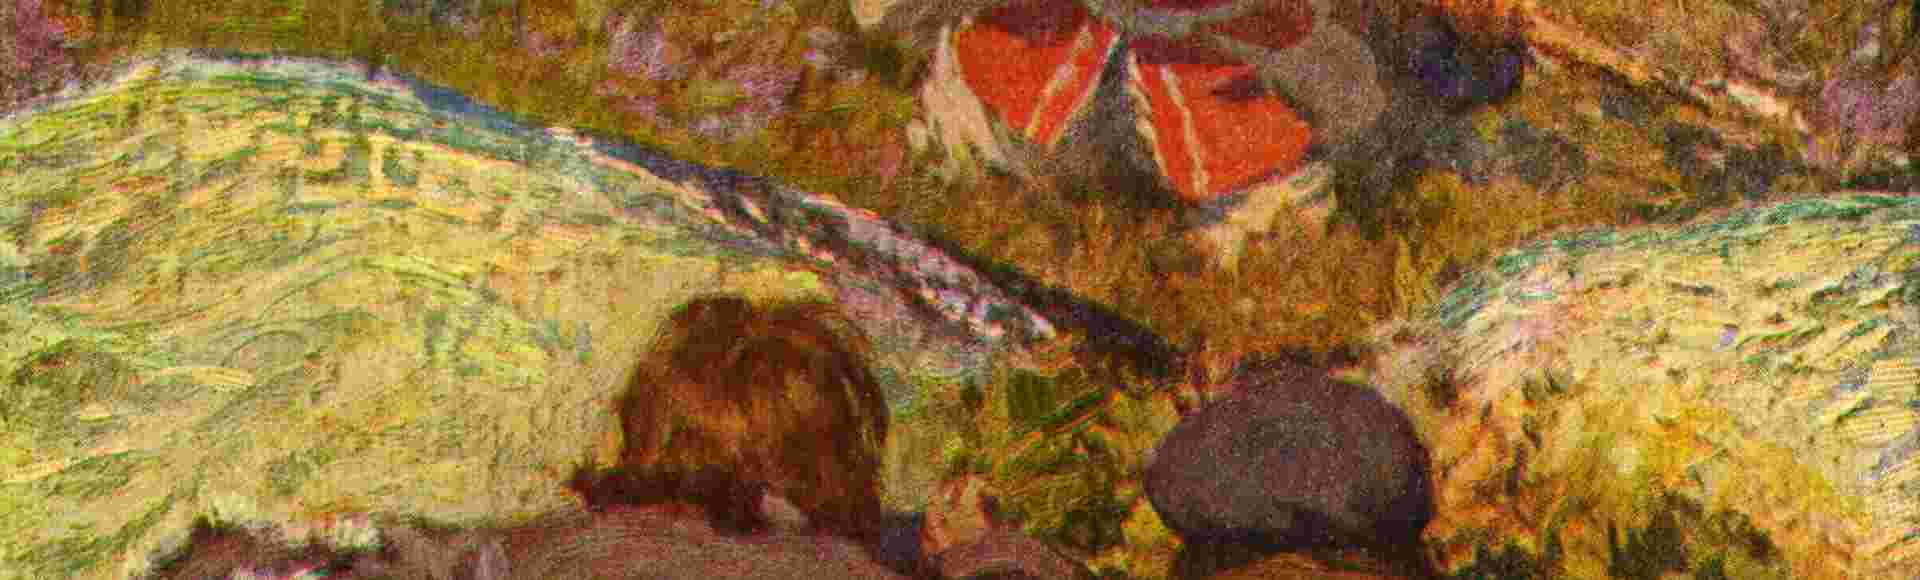 A scene from the novel Kidnapped, illustration by Robert Louis Stevenson.